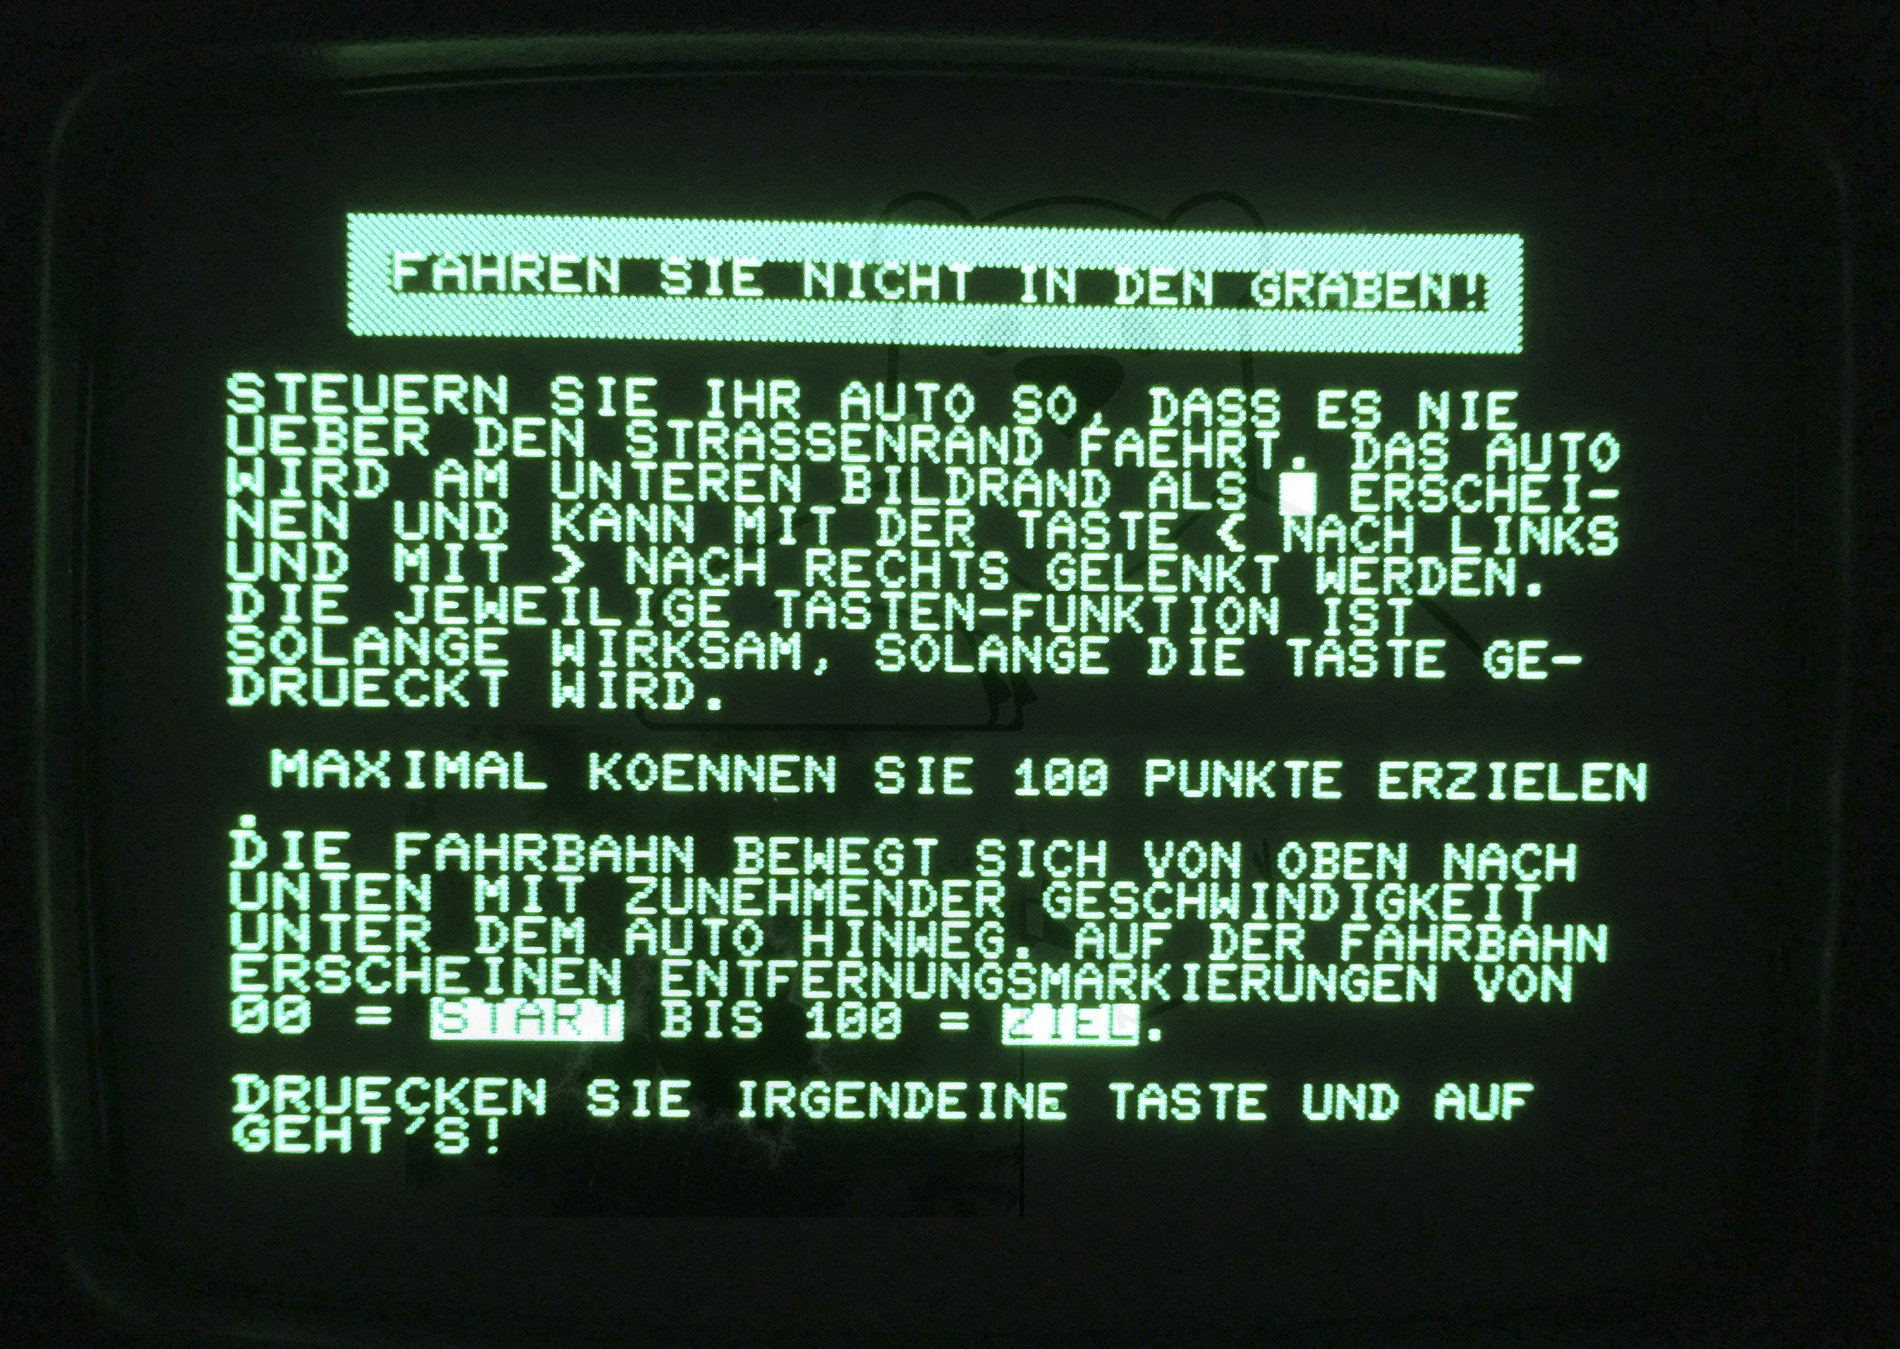 Commodore PET 2001 - Startbildschirm des Rennspiels